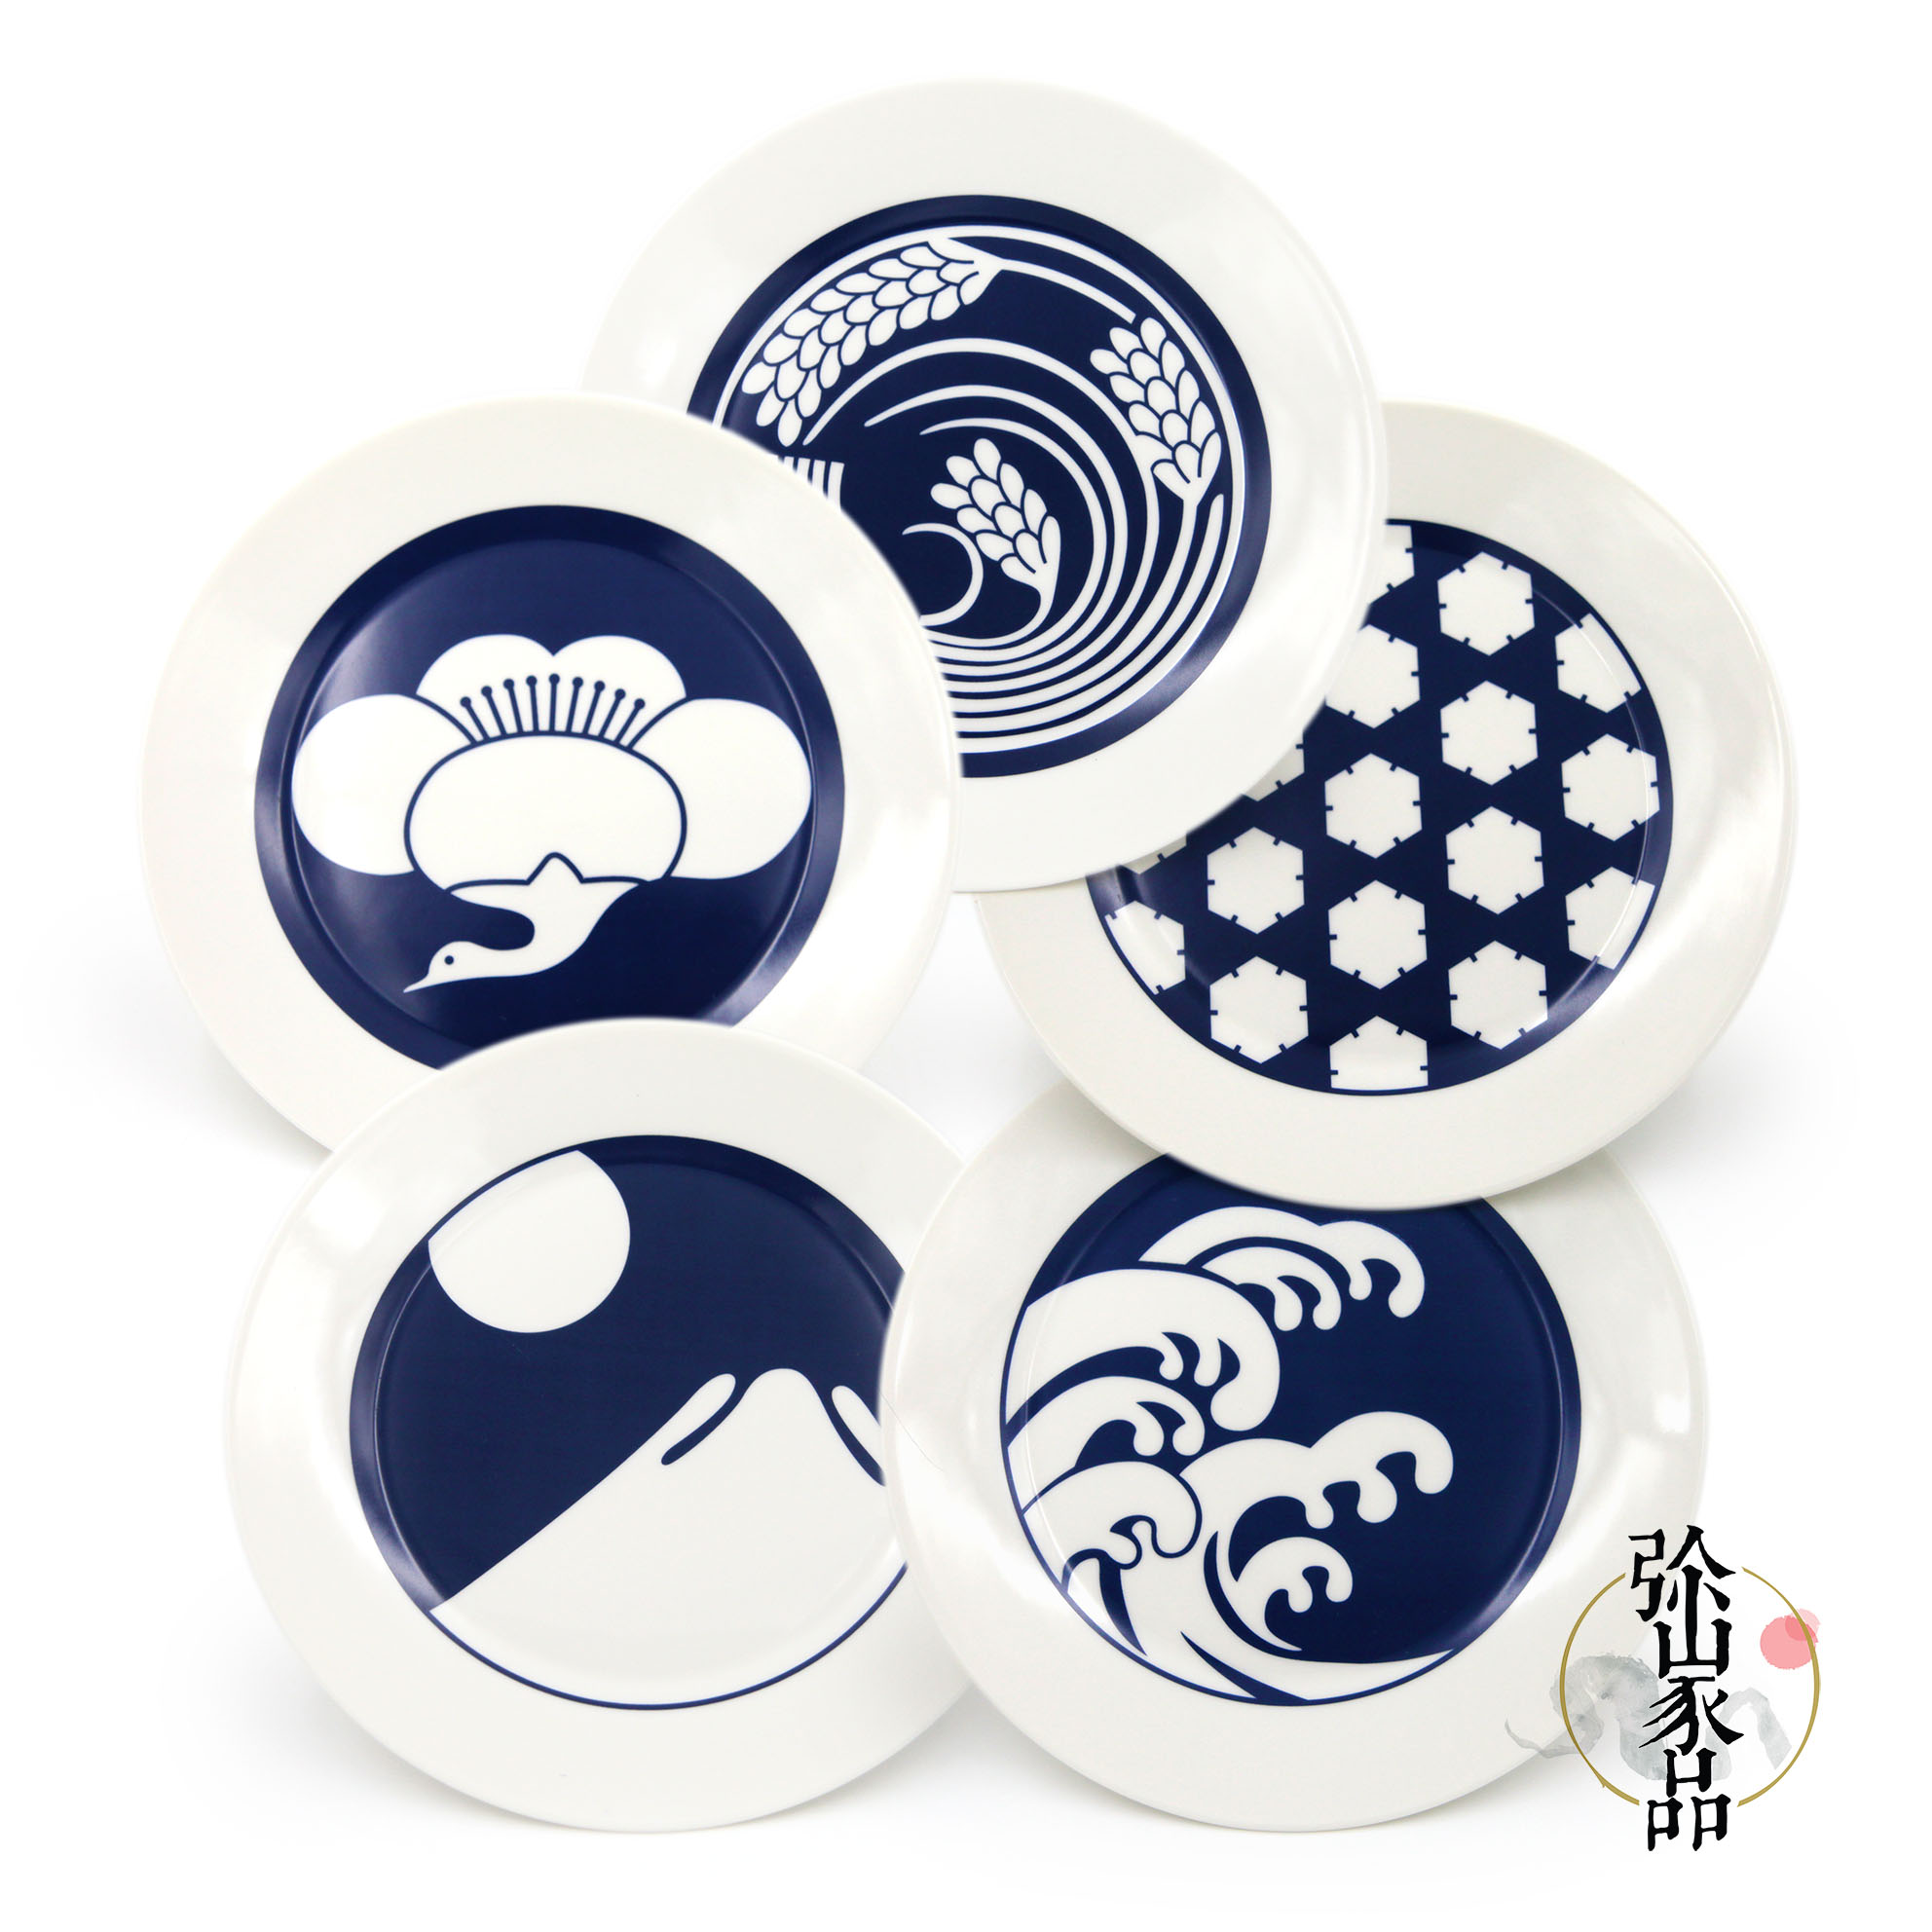 【弥山家品】青和|餐碟 和风日式图案陶瓷牛排盘一式五款 非不器